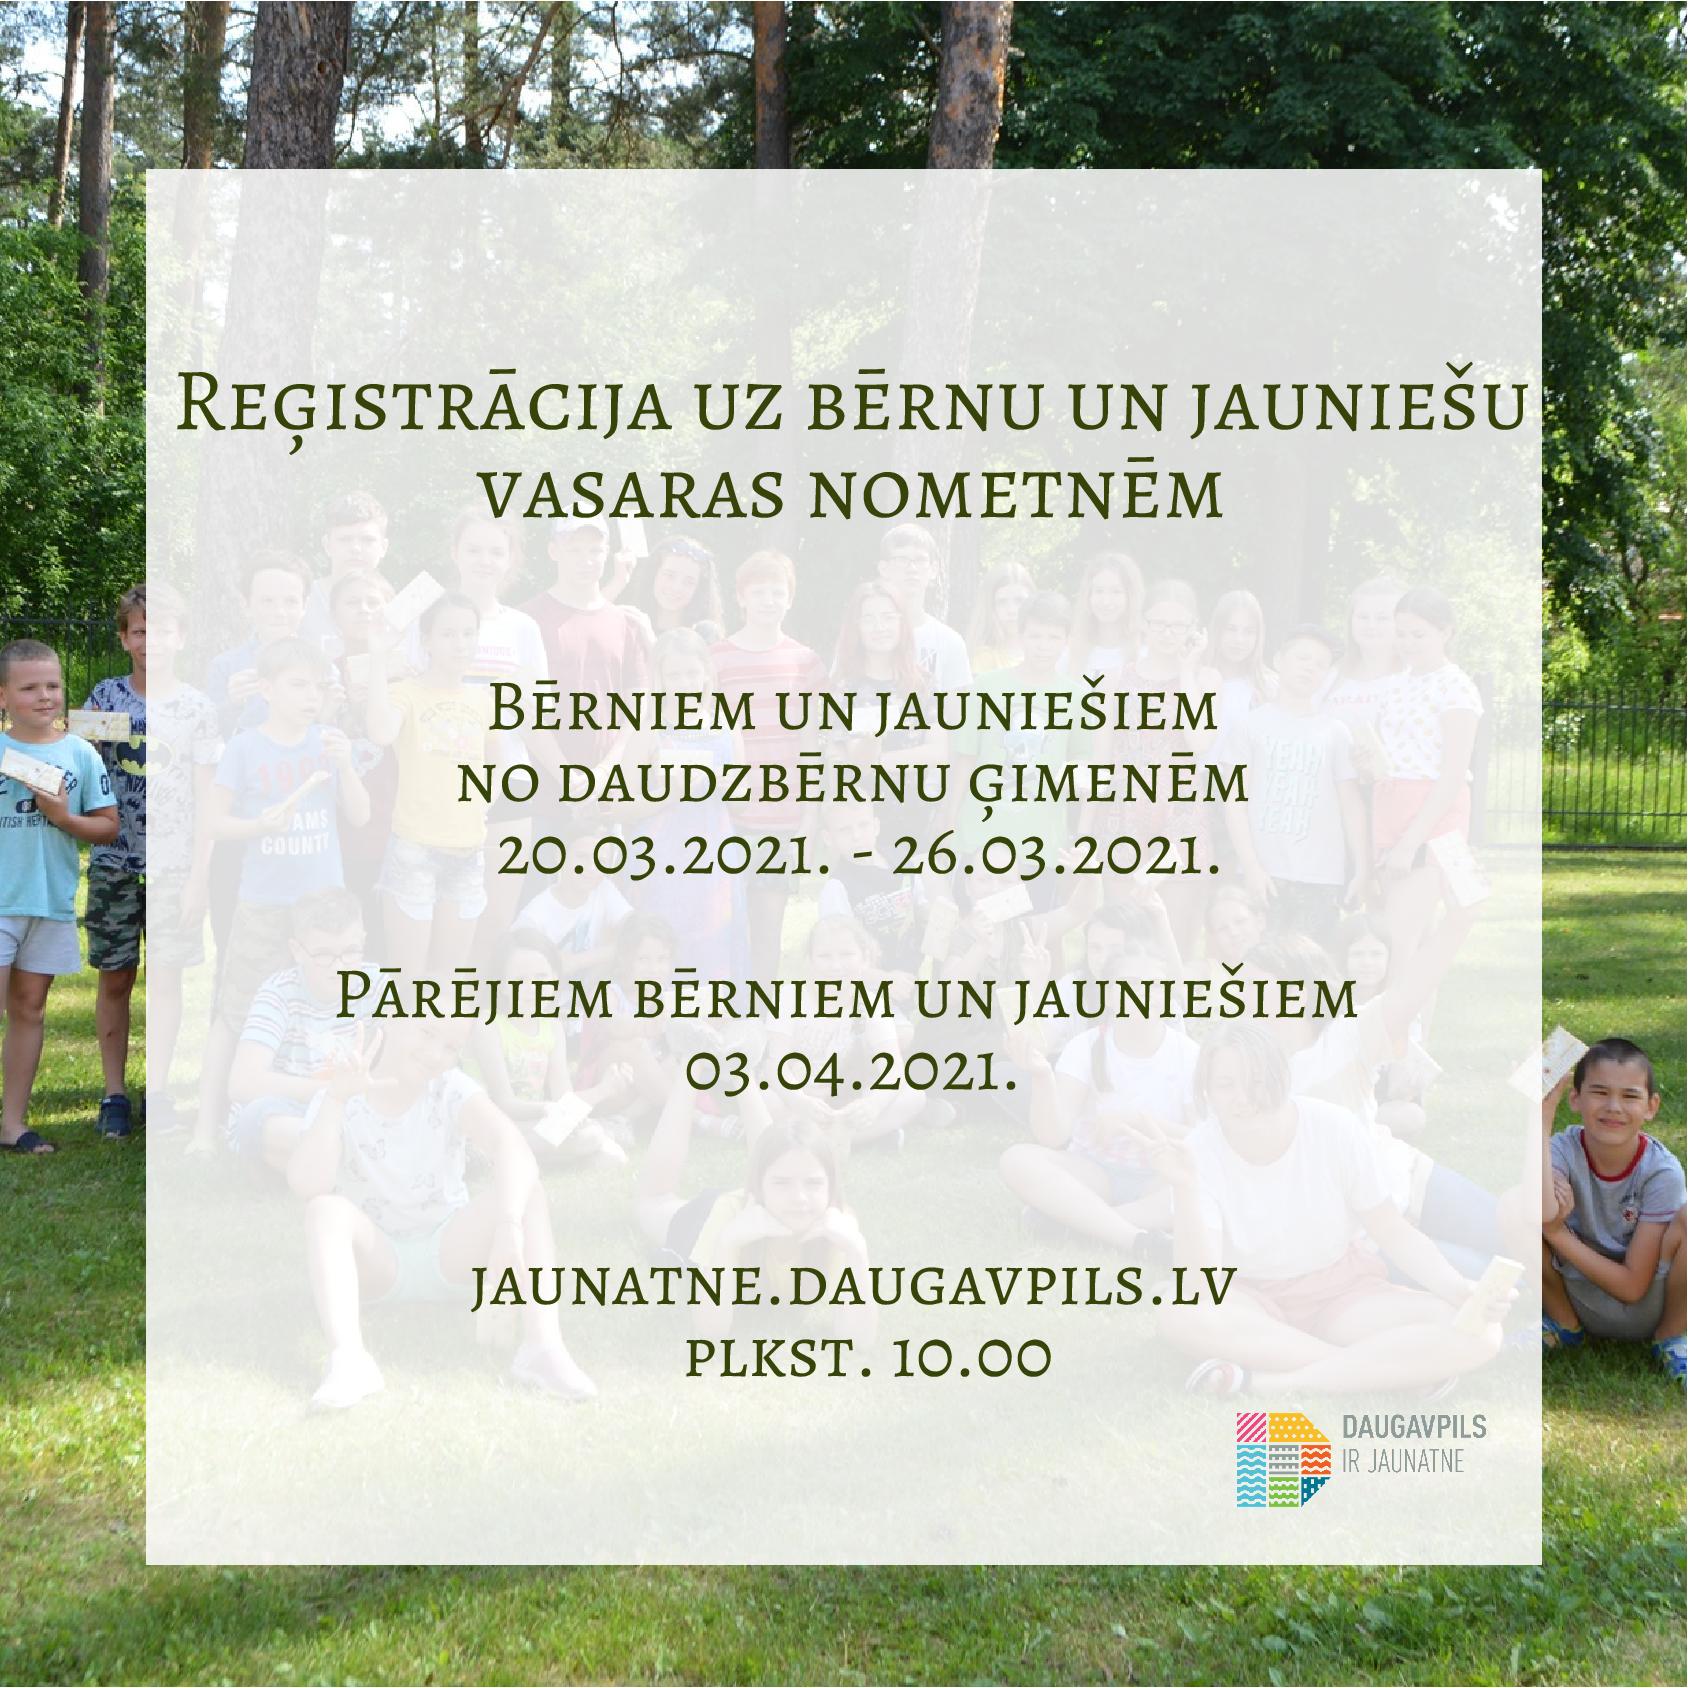 Bērnu un jauniešu vasaras nometnes 2021 - reģistrācijas datumi